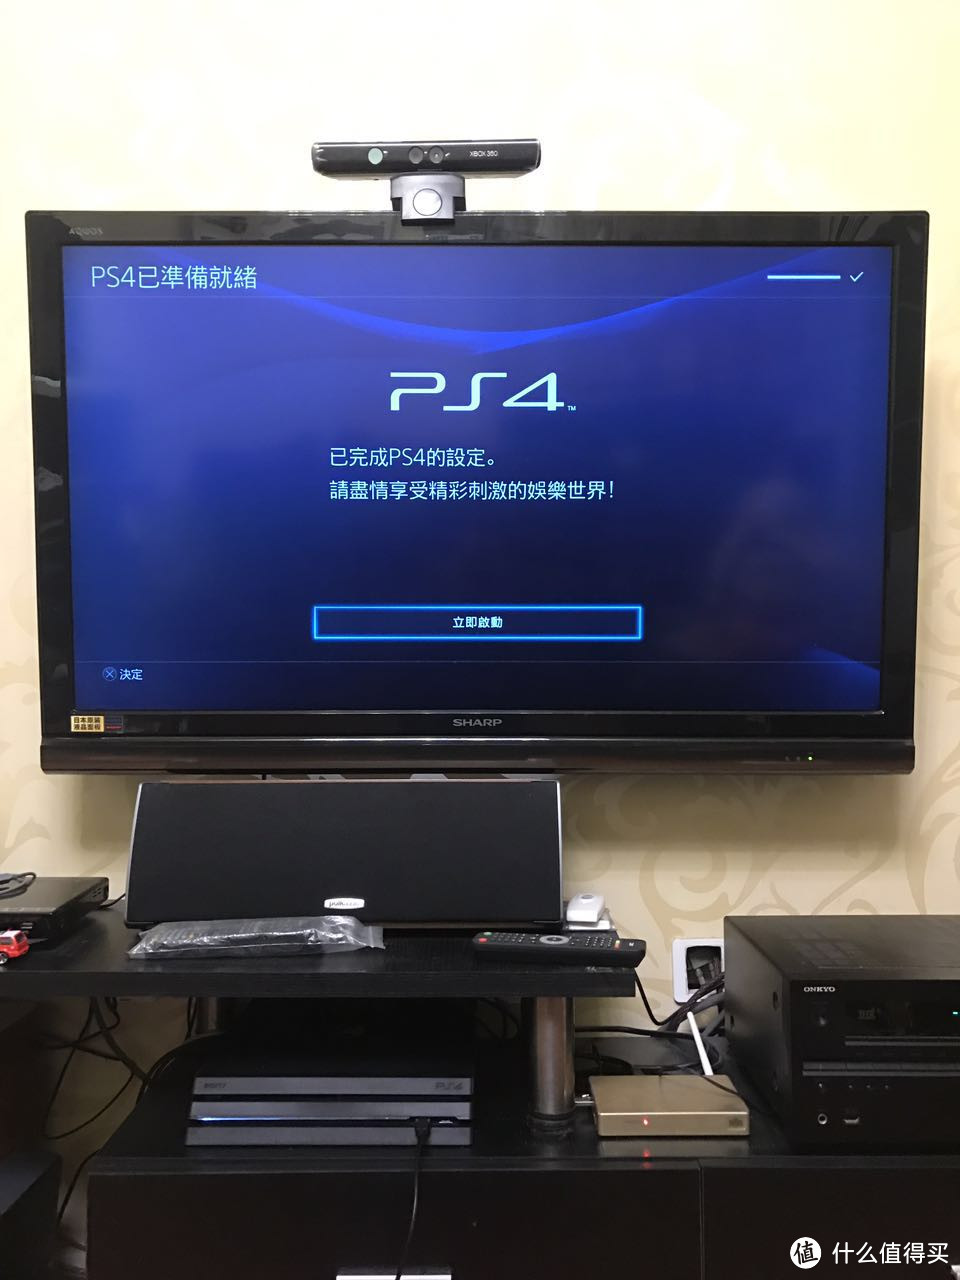 英淘 PS4 Pro 开箱手记（附蓝光播放投影效果）